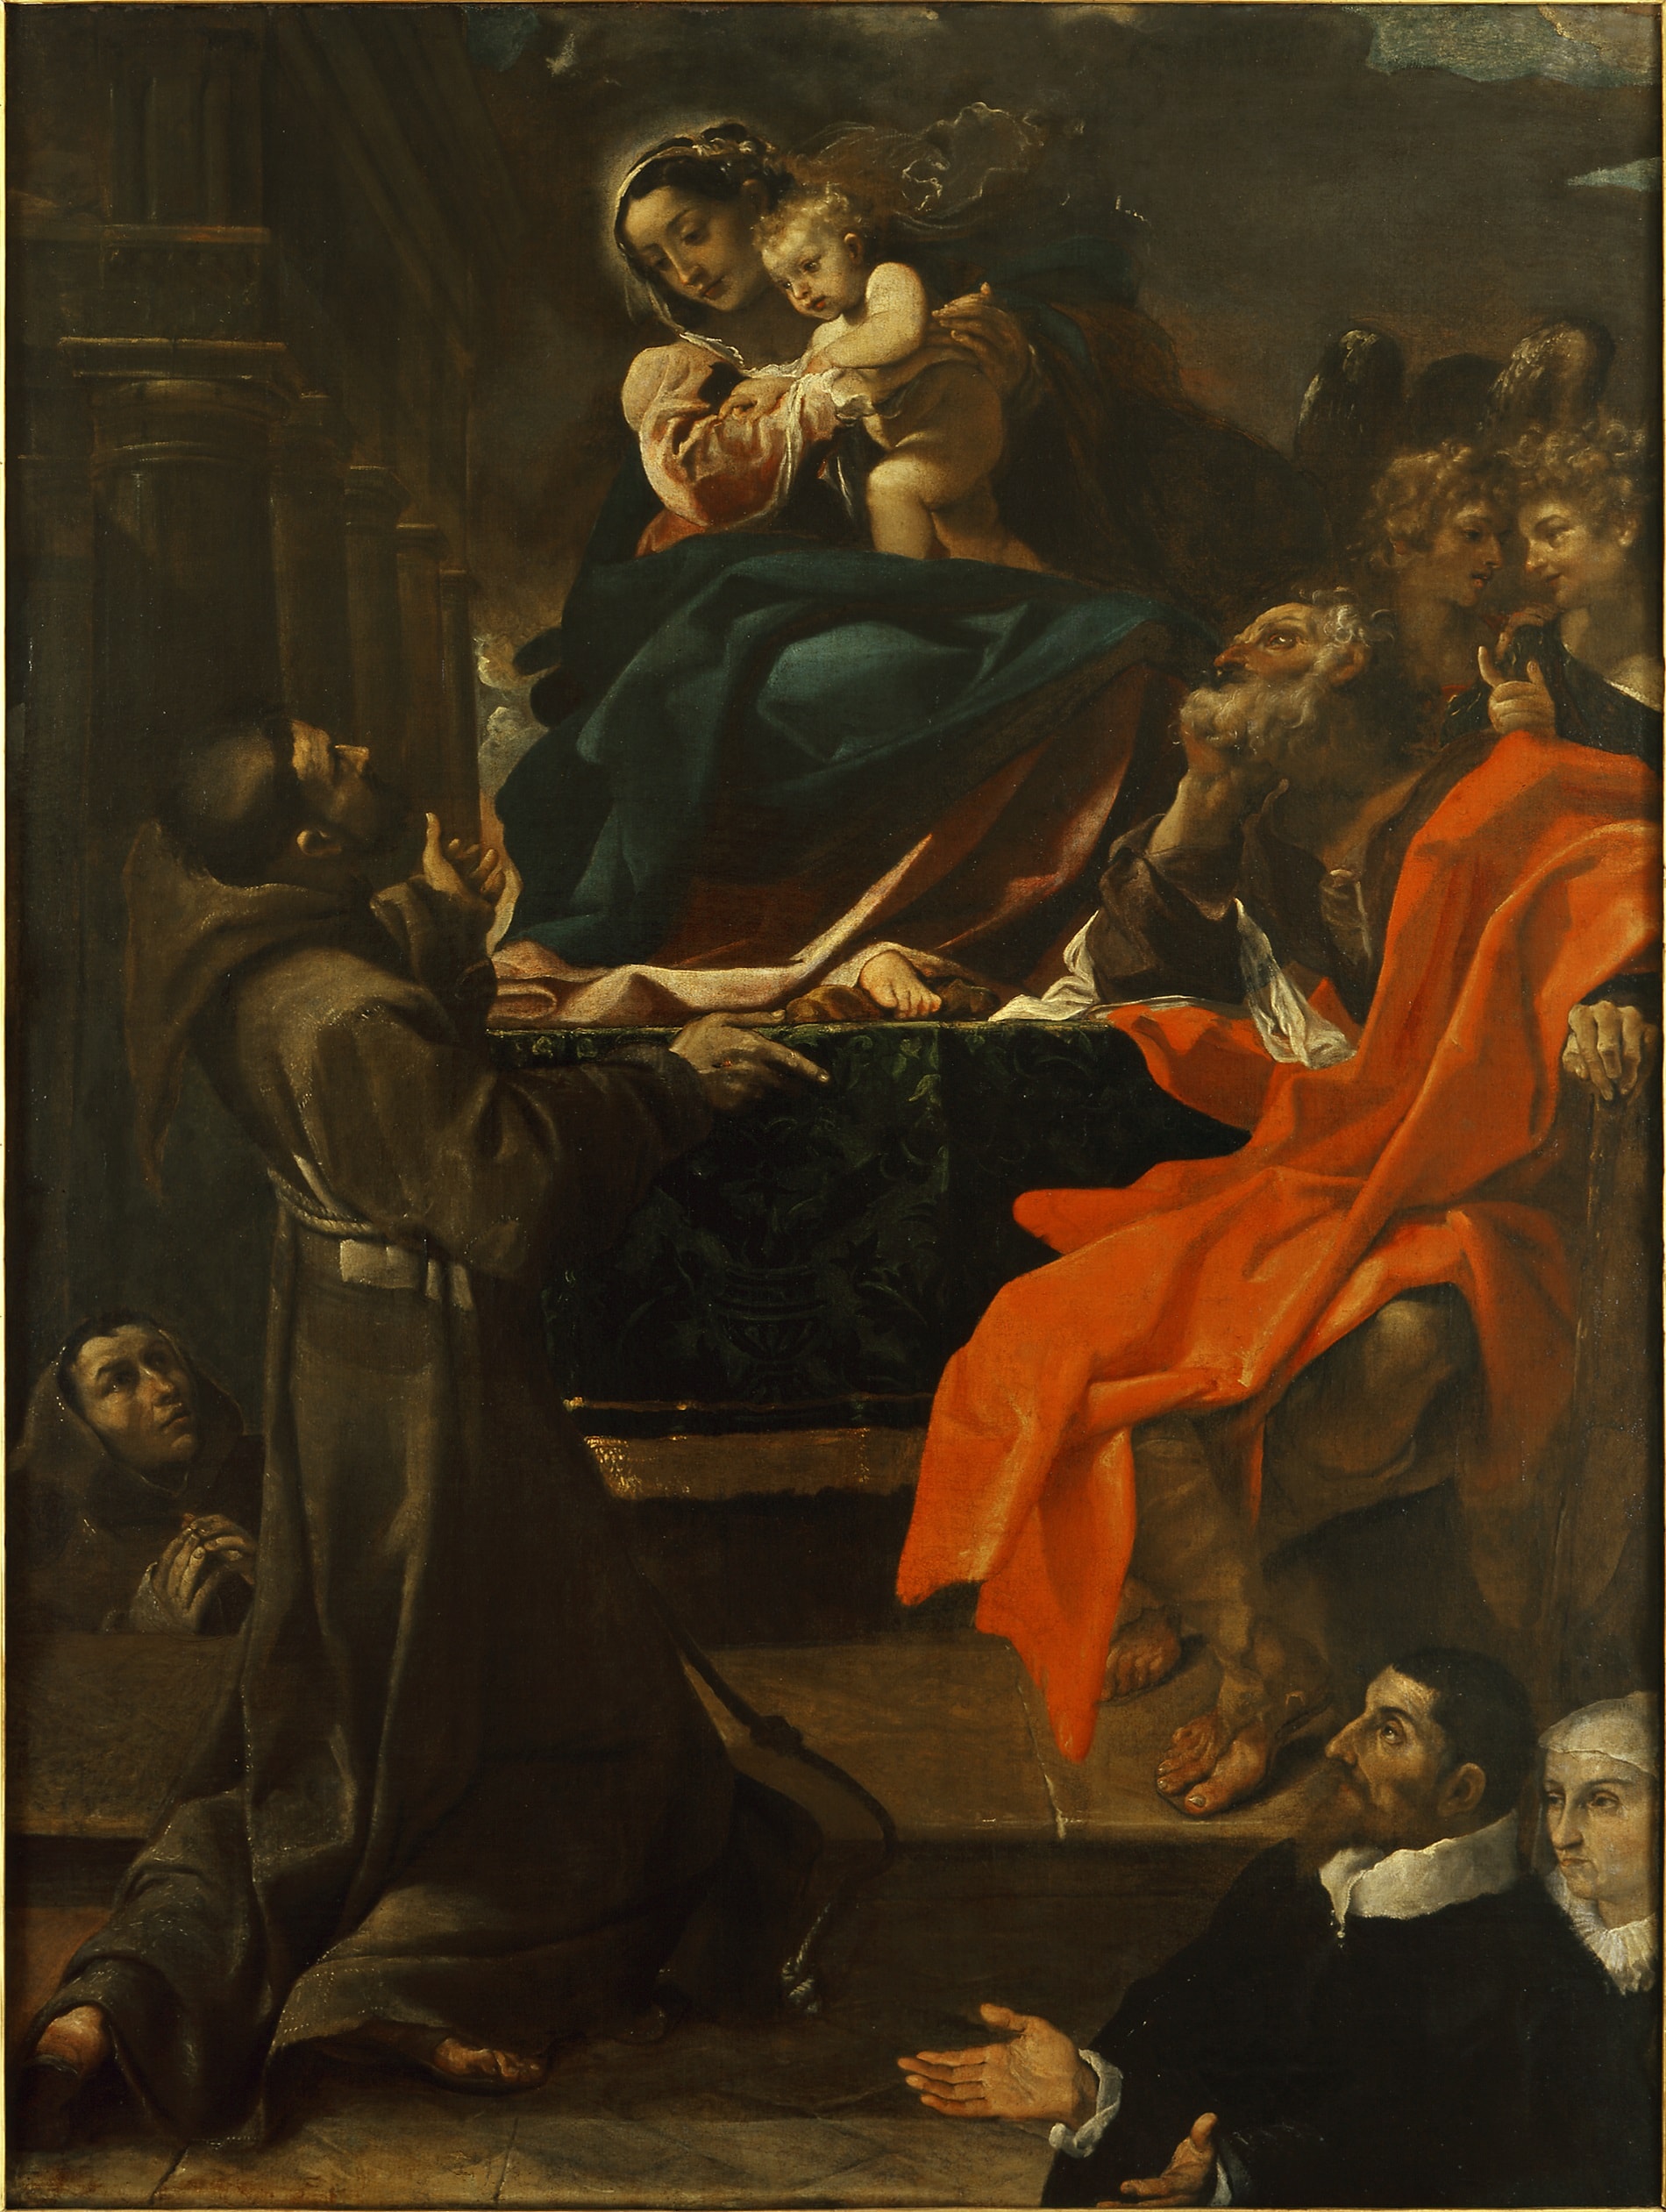 Ludovico Carracci (1555 - 1619), La Carracina, 1591, Olio su tela, 225 x 166 cm., Cento, Civica Pinacoteca di Cento